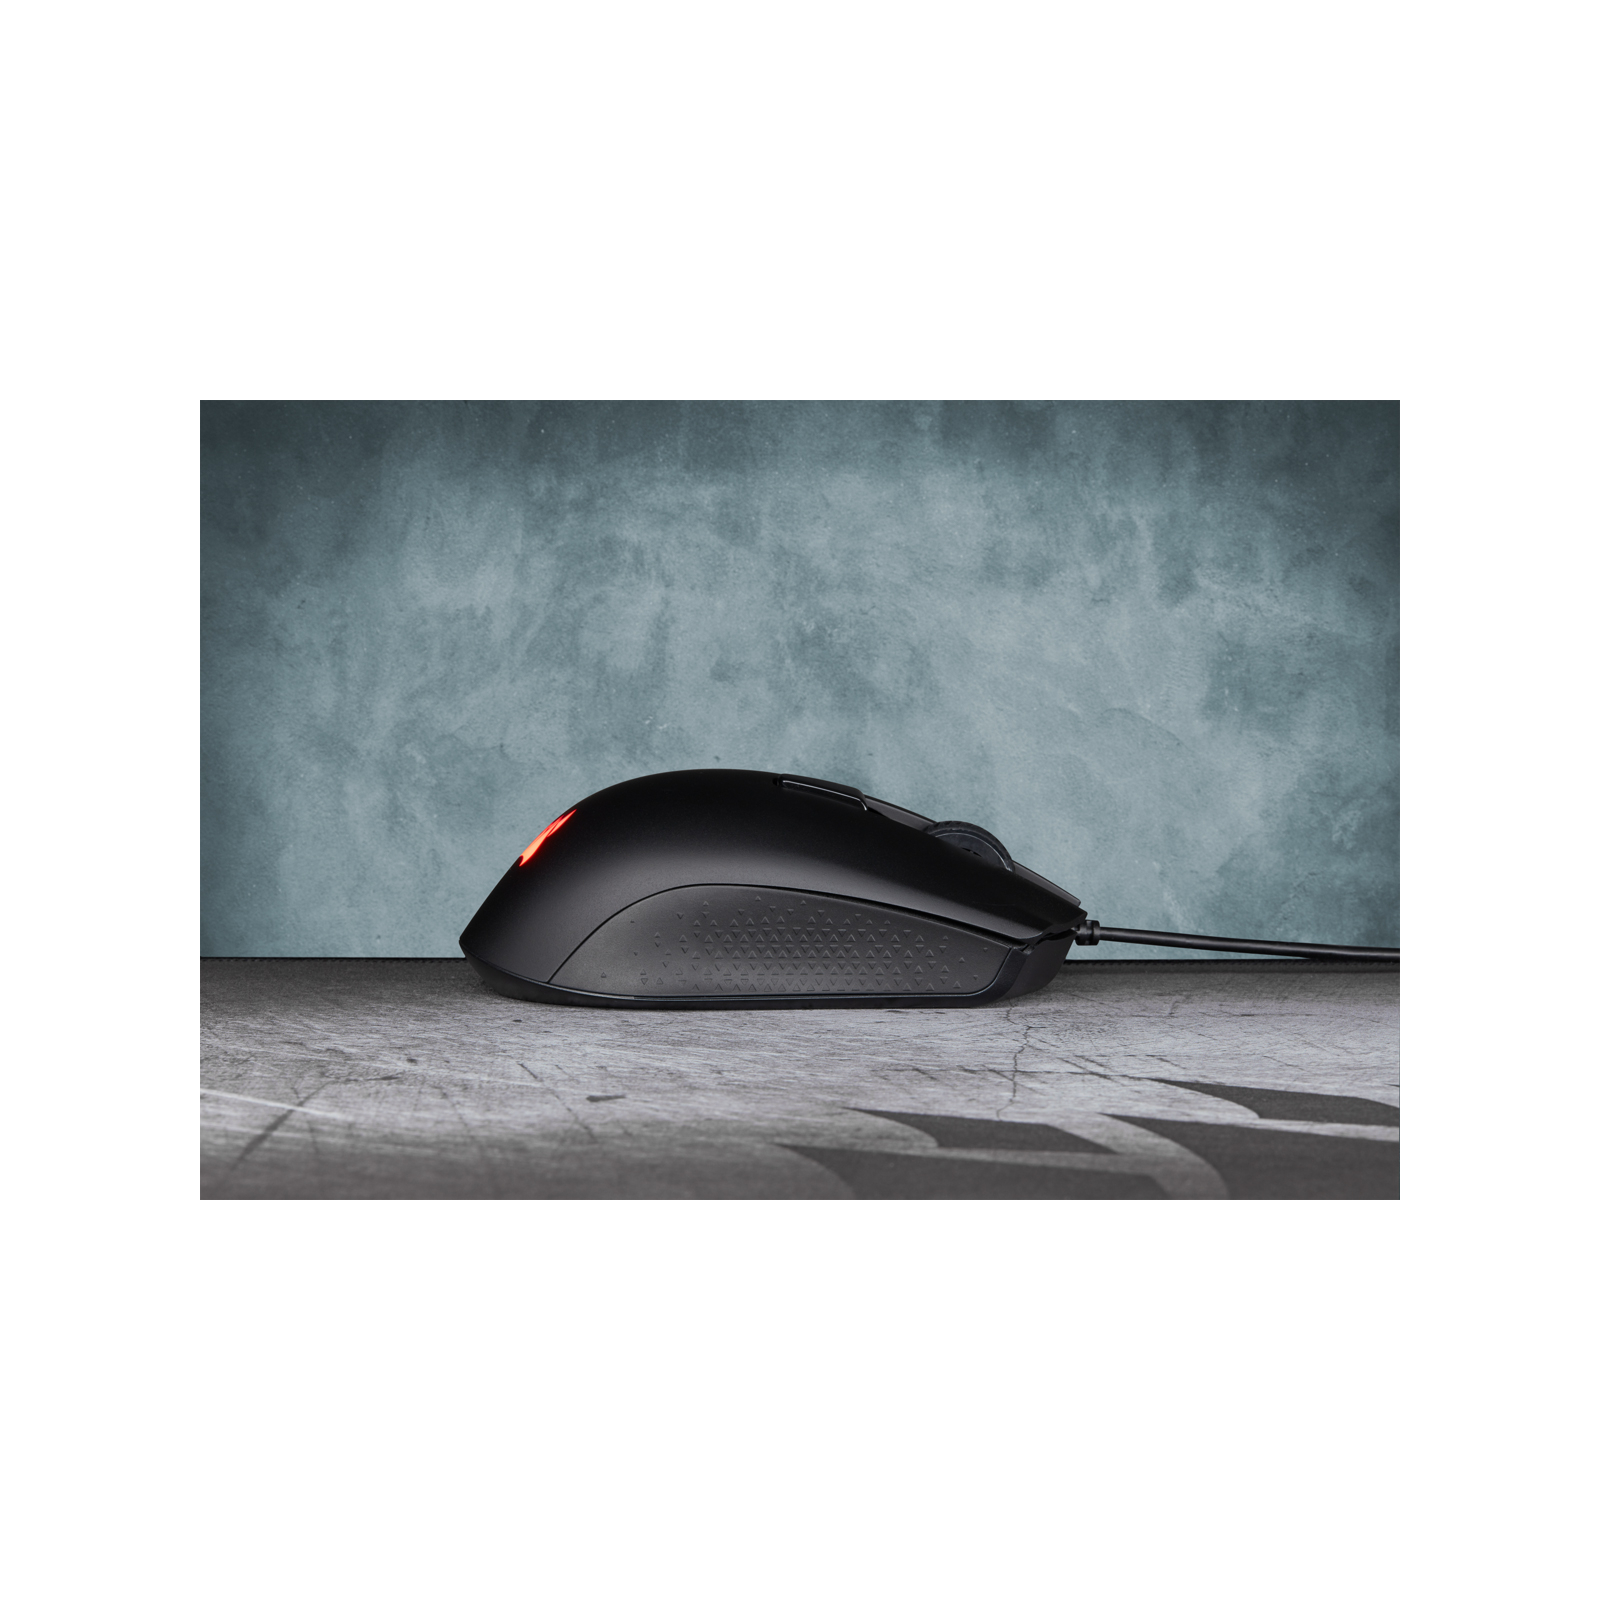 Мышка Corsair Harpoon RGB Pro Black (CH-9301111-EU) изображение 10